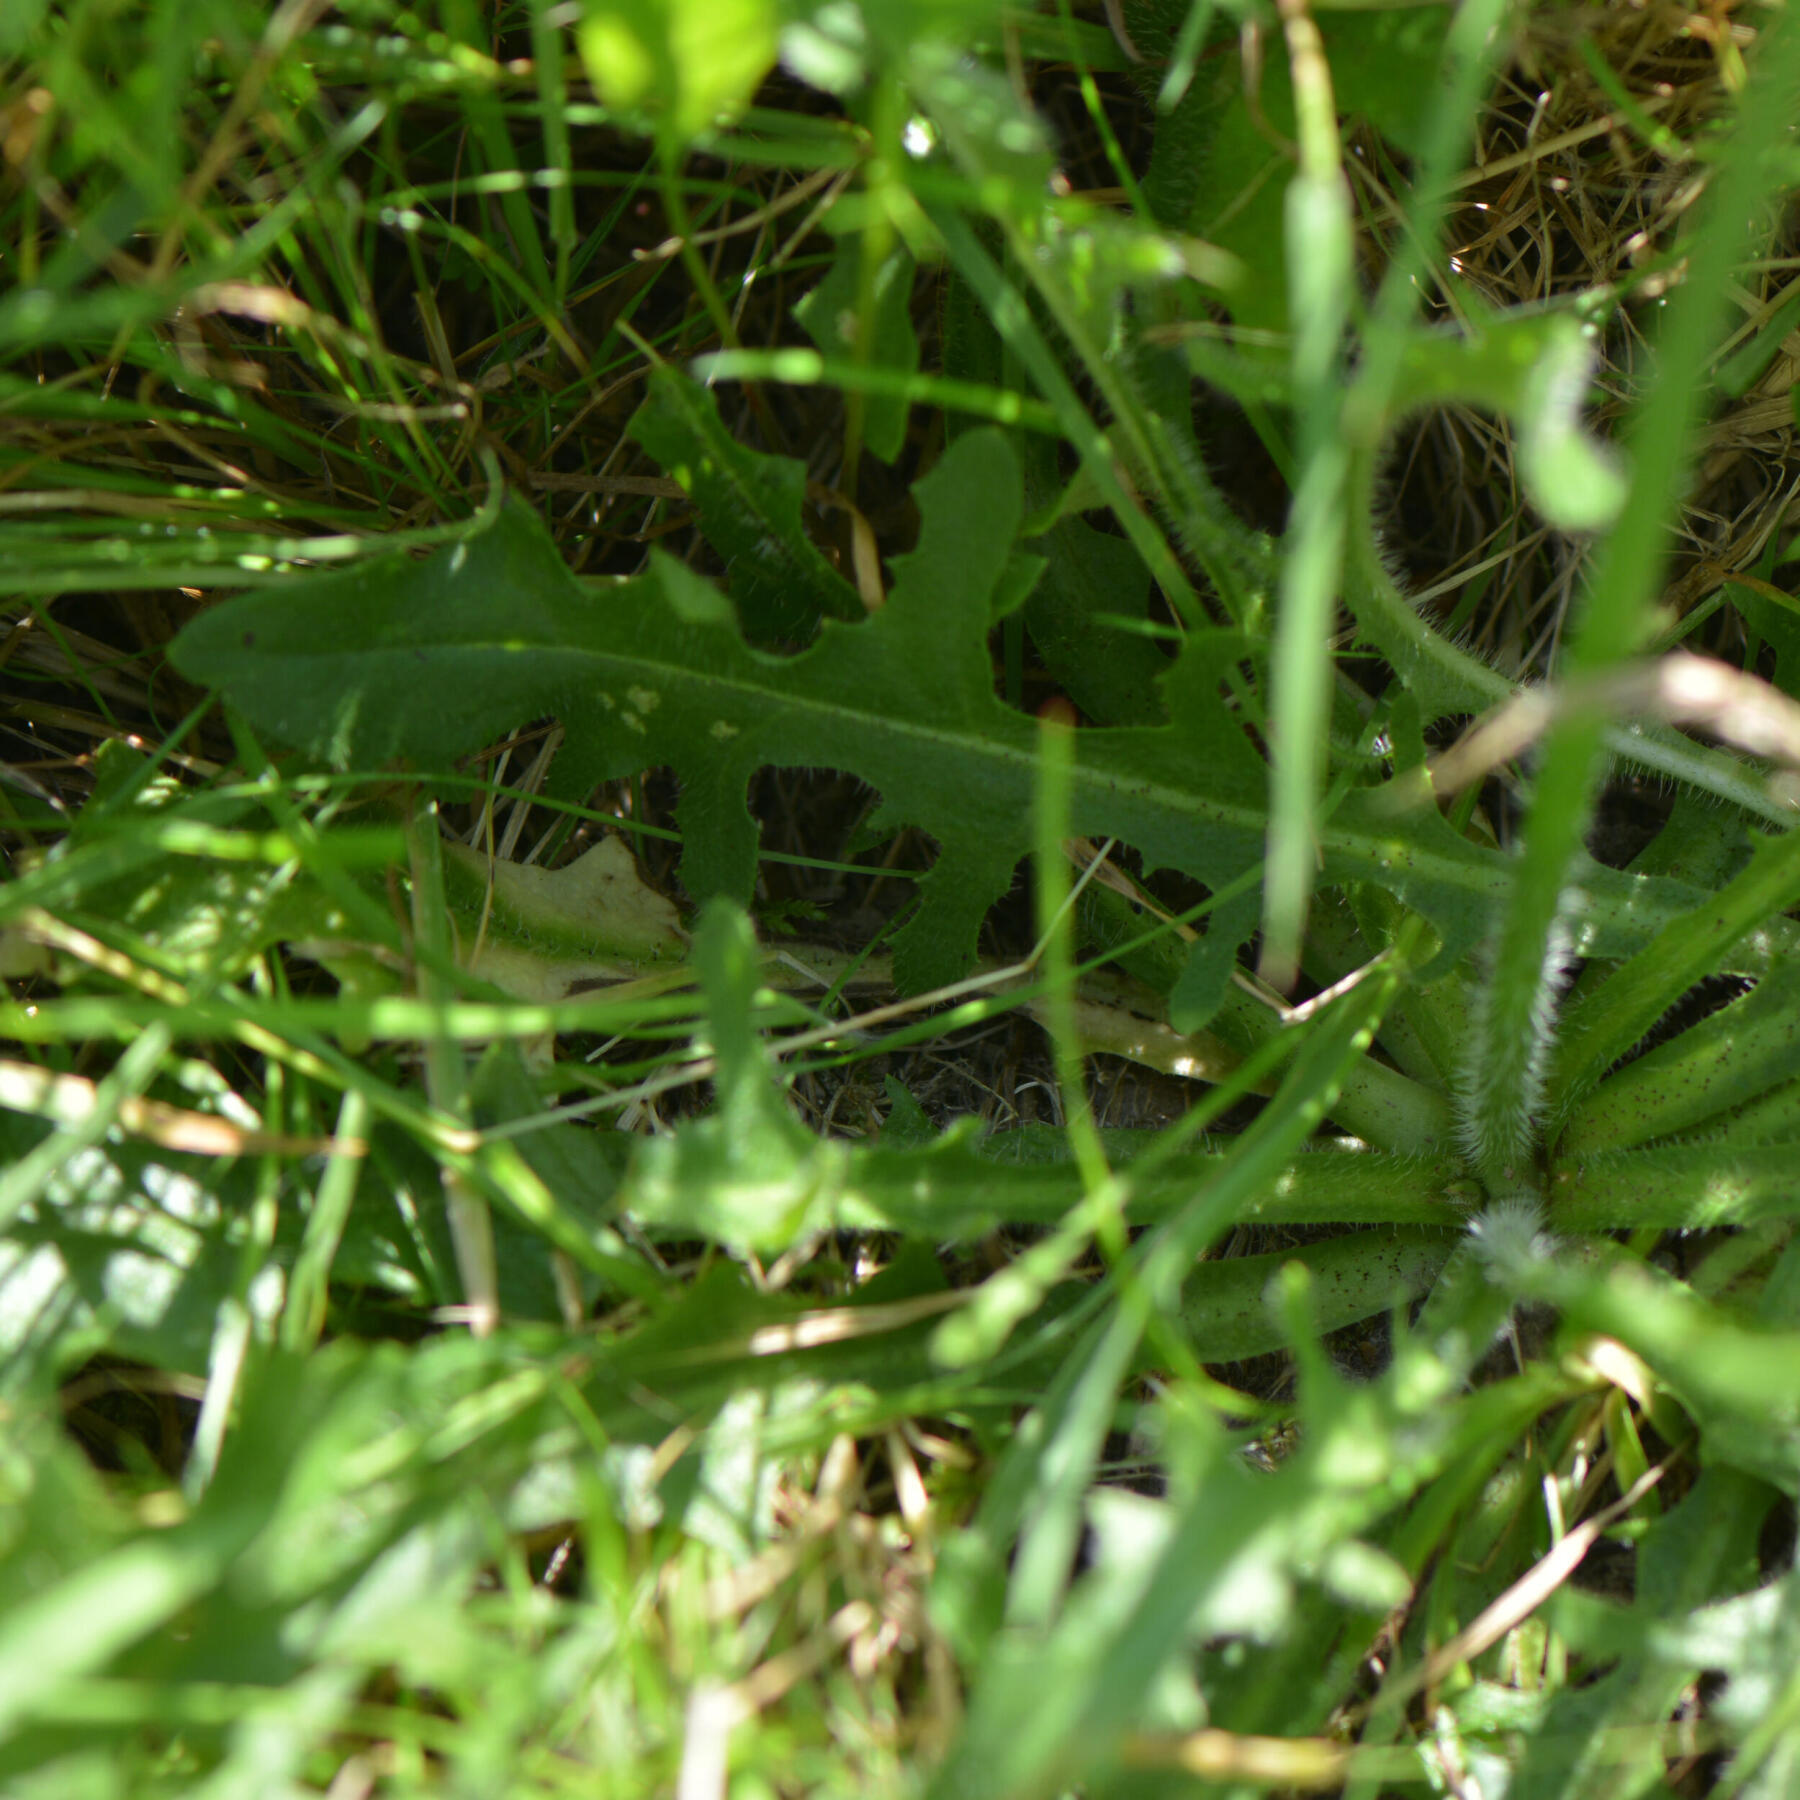 la porcelle enracinée (ou hypochaeris radicat) avec ses feuilles vertes et ses petits poils blancs caractéristiques